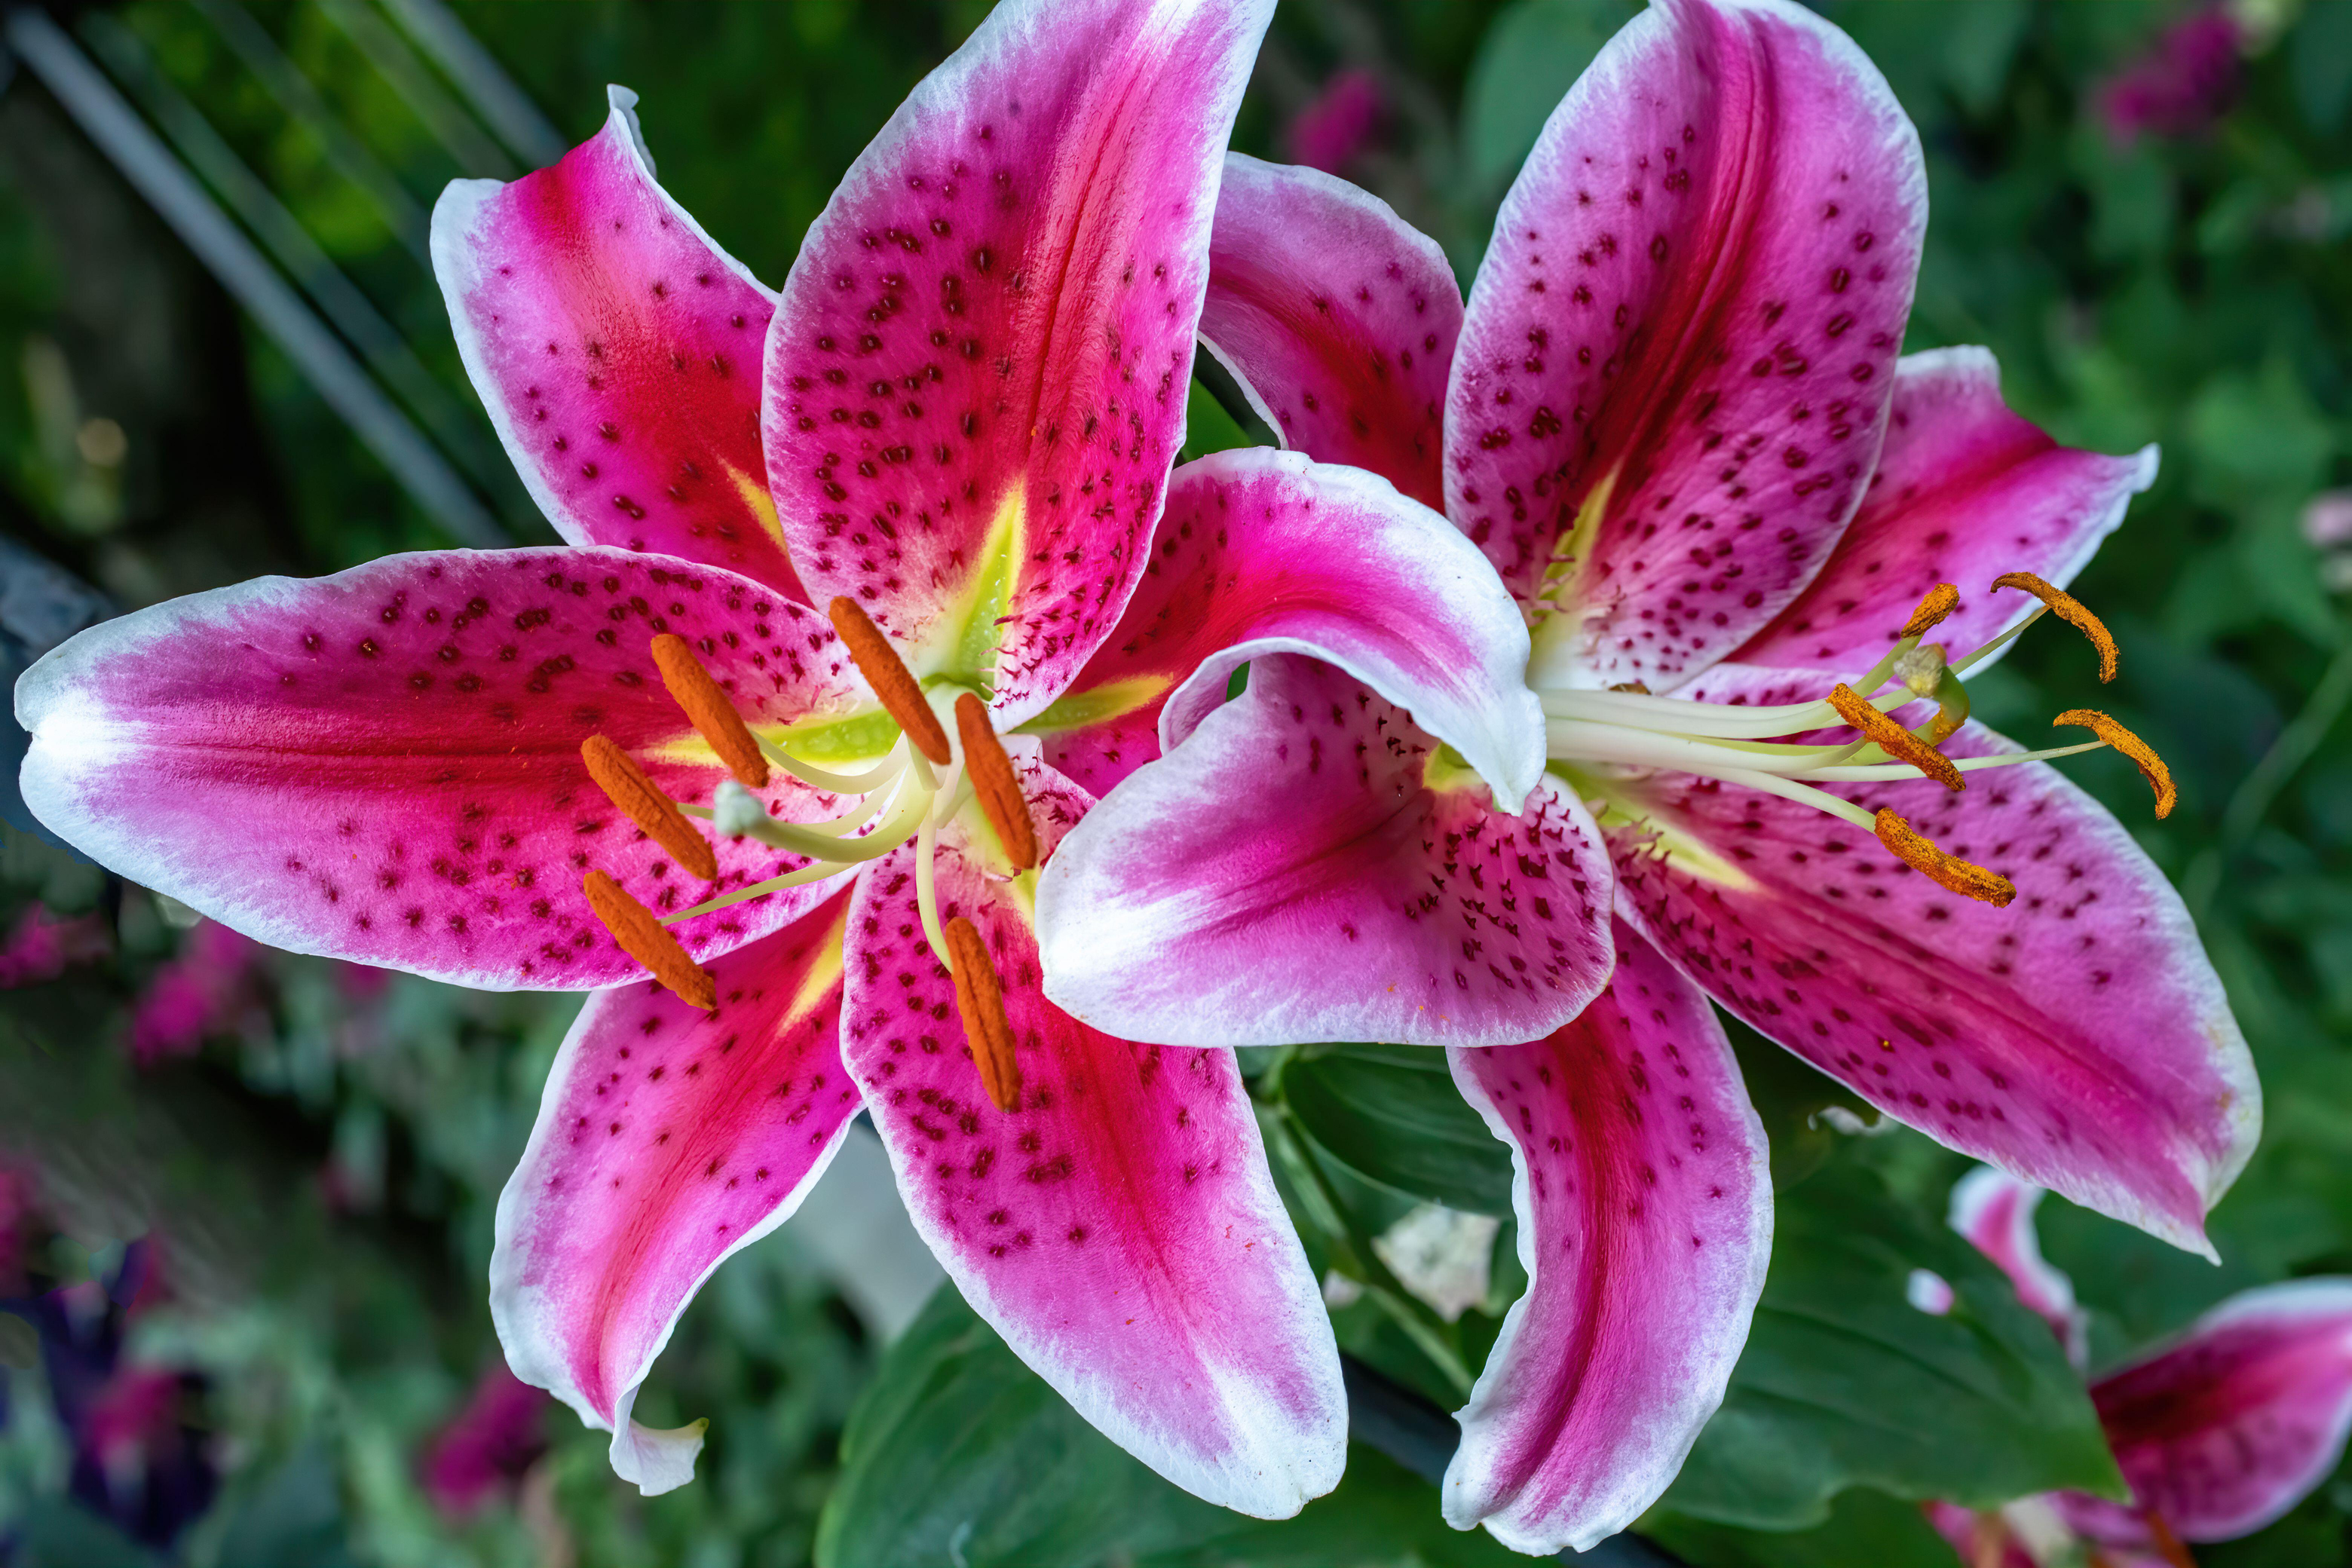 'Stargazer' lilies (Alamy/PA)